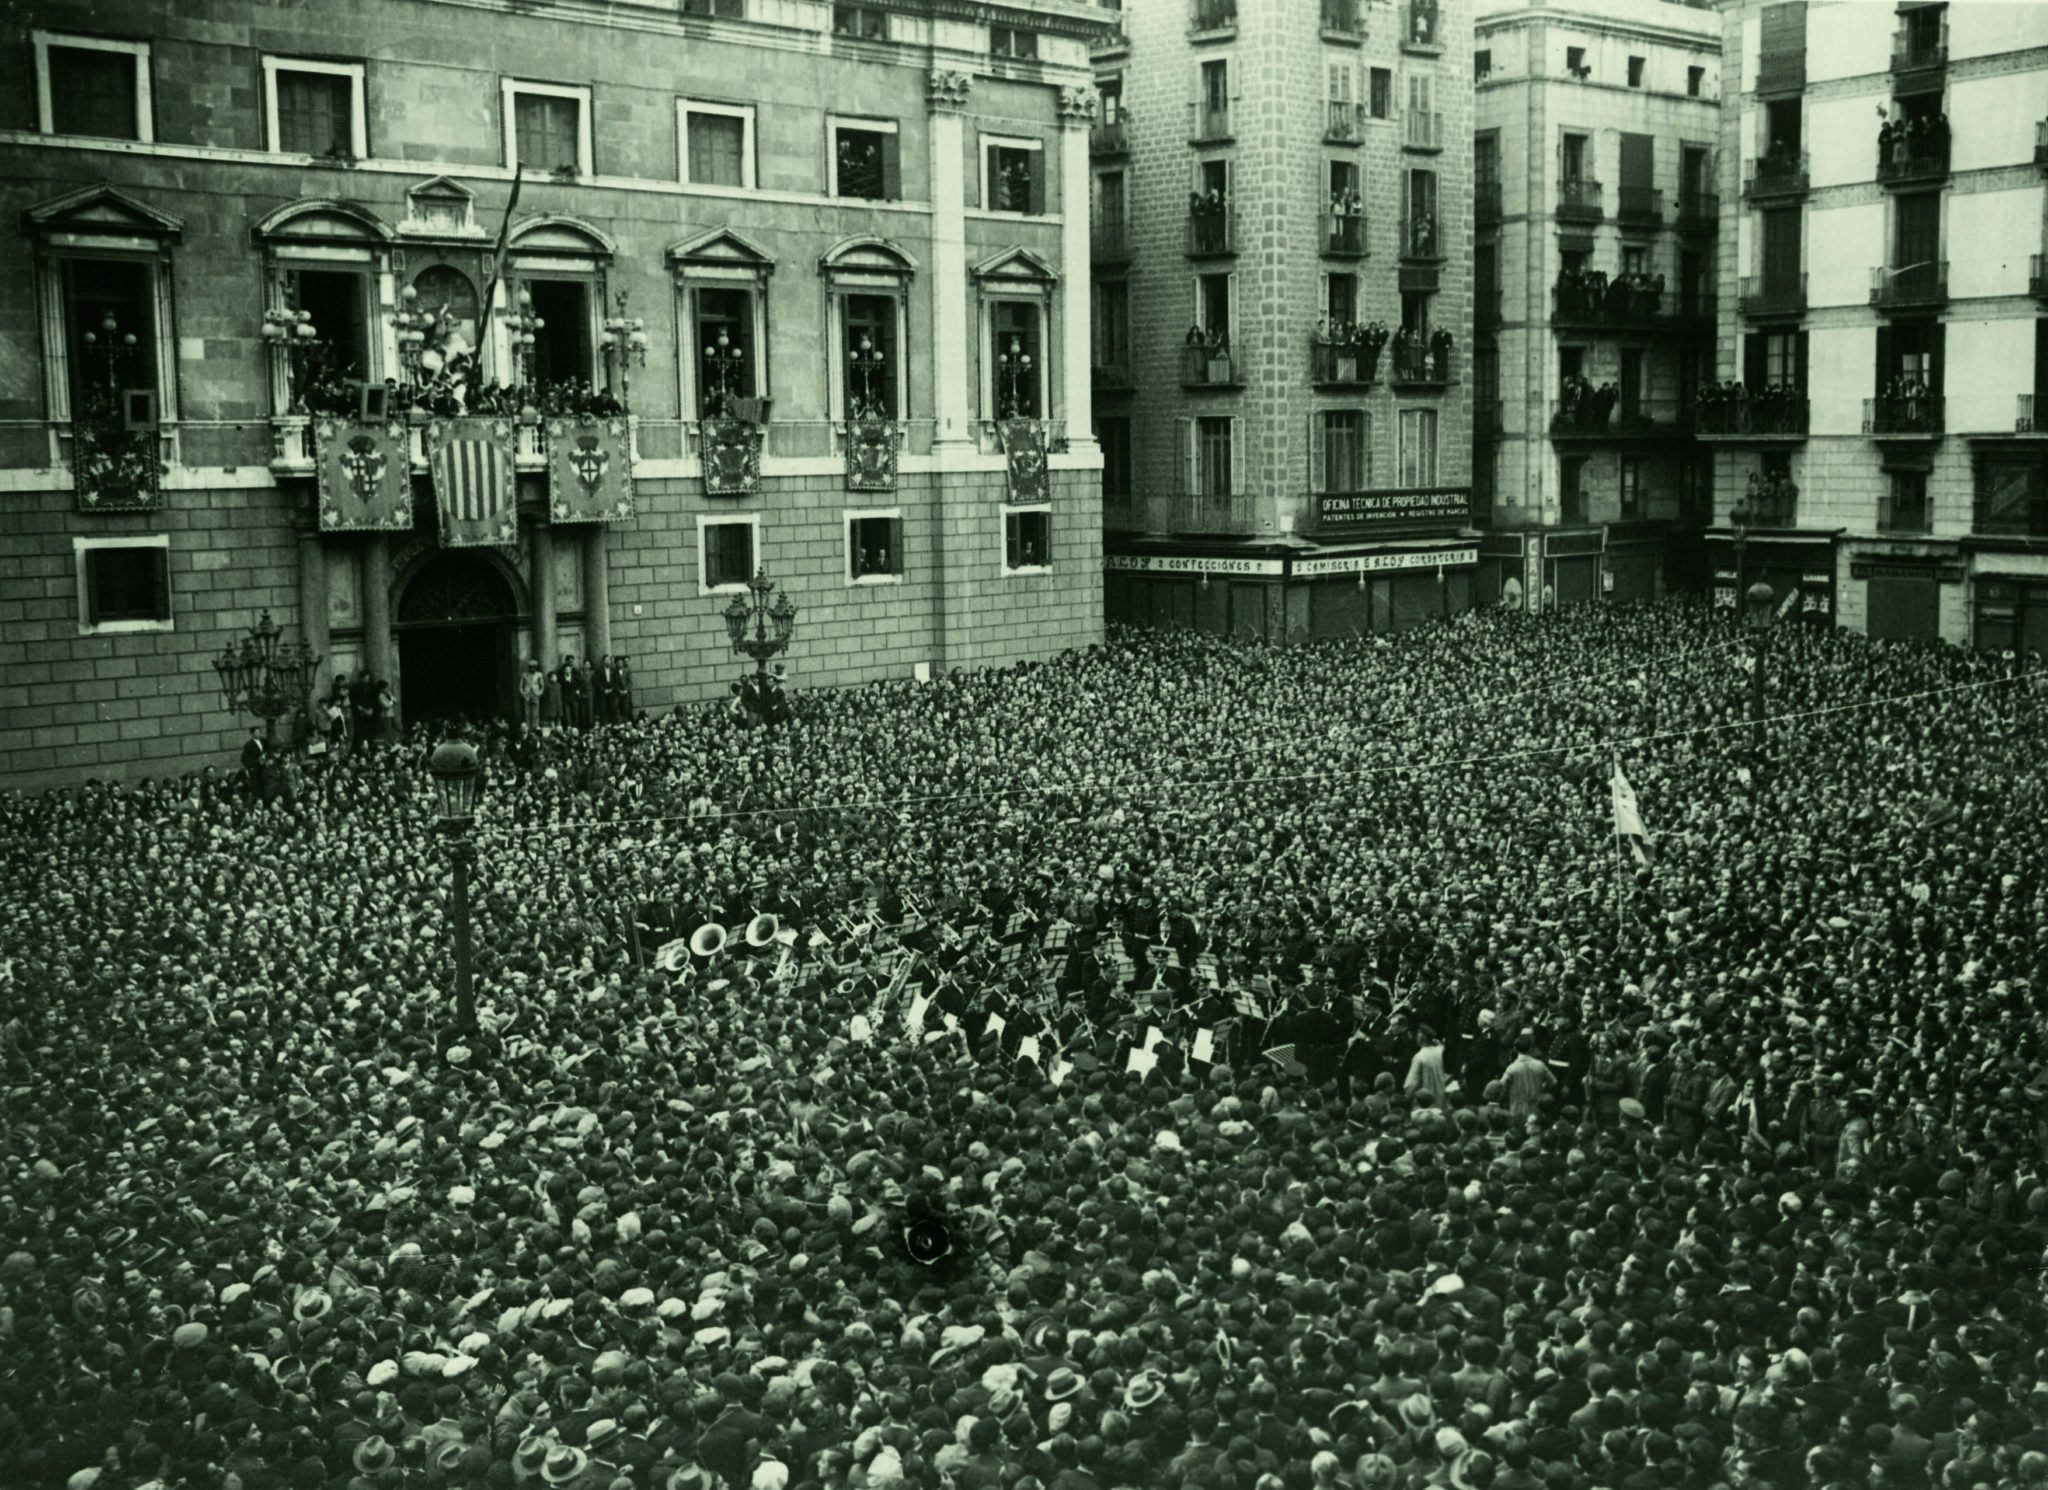 Proklamacja Republiki Katalońskiej w 1931 r., By Banda Municipal de Barcelona - Banda Municipal de Barcelona, CC BY-SA 3.0, https://commons.wikimedia.org/w/index.php?curid=33811819